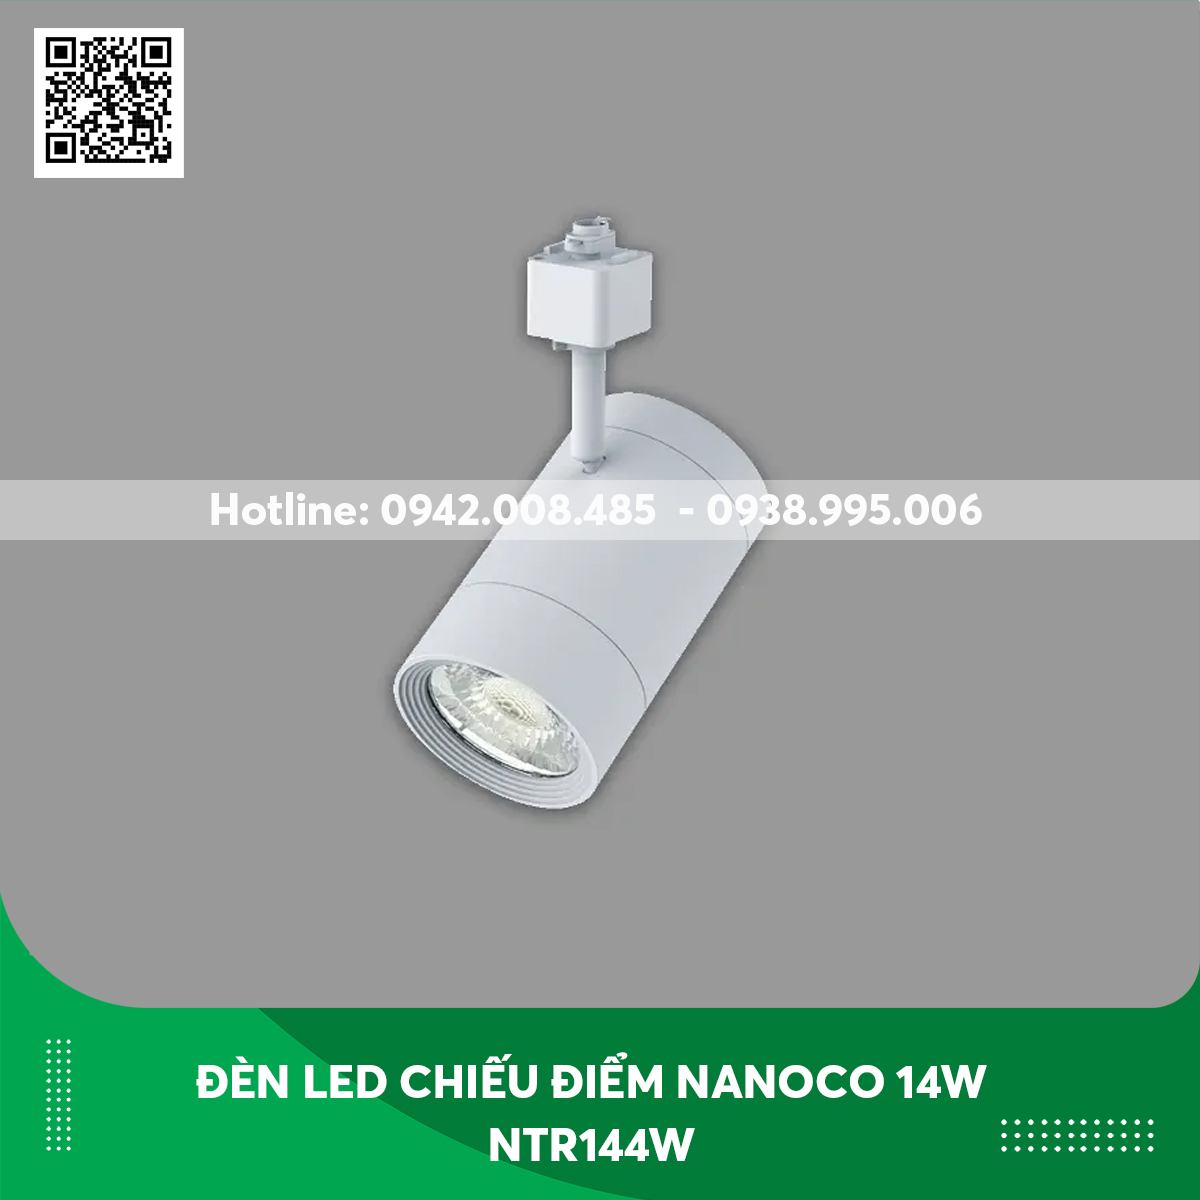 Đèn led chiếu điểm Nanoco 14w NTR144W thân trắng ánh sáng trung tính